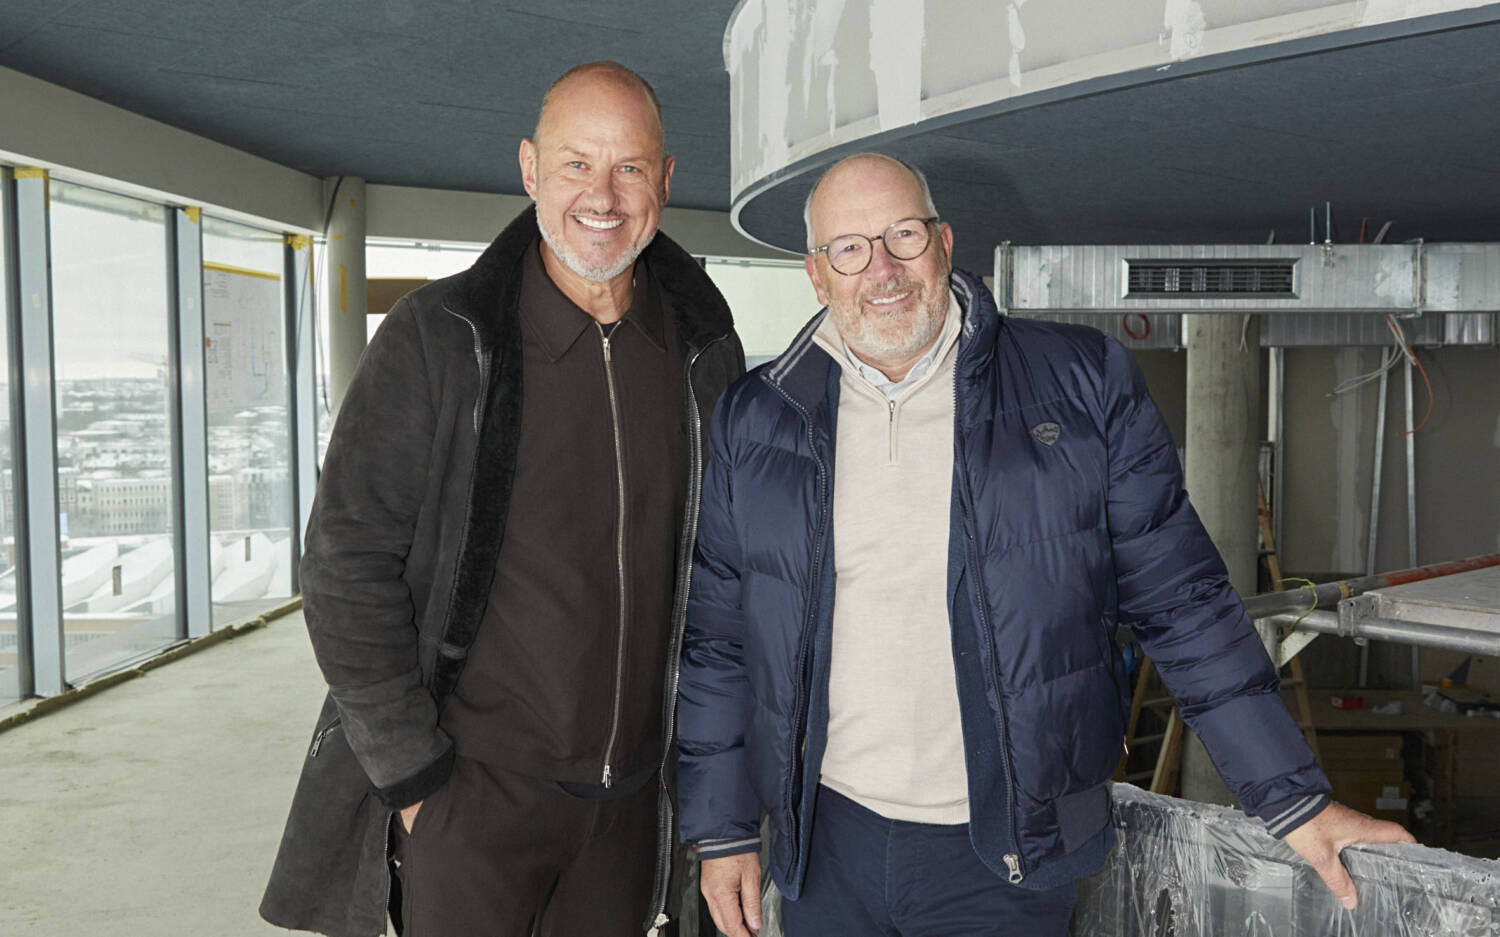 Frank Rosin mit Marek N. Riegger, dem CEO der RIMC Hotels & Resorts Group, auf dem Bunker / ©RIMC